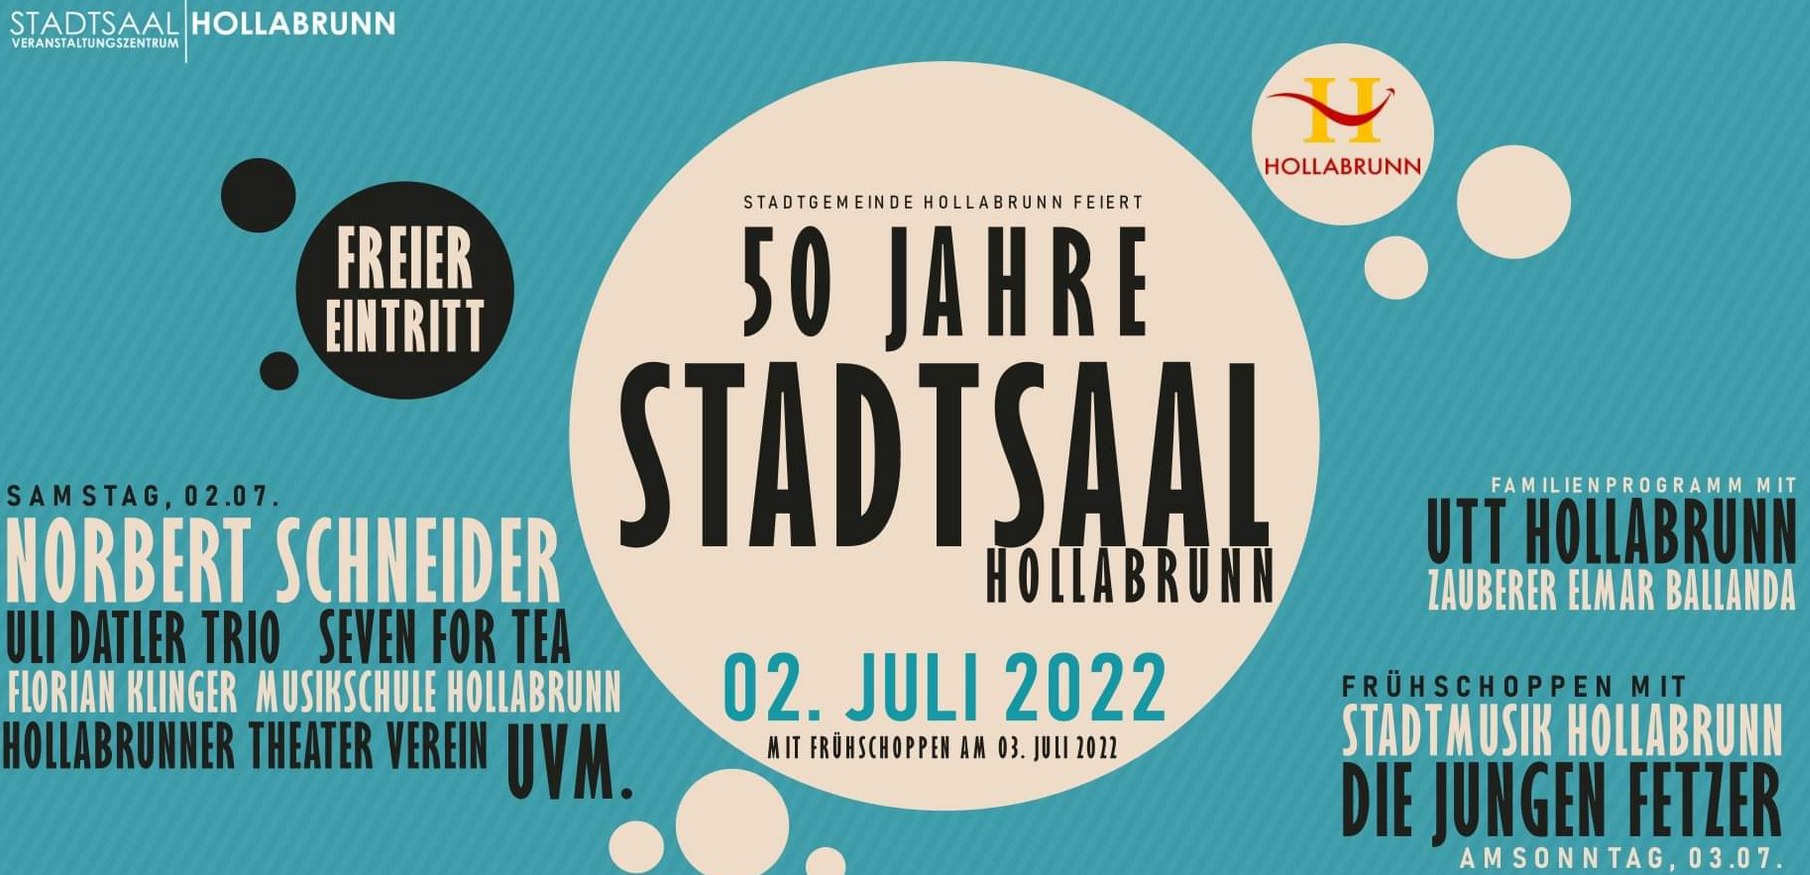 50 Jahre Stadtsaal Hollabrunn